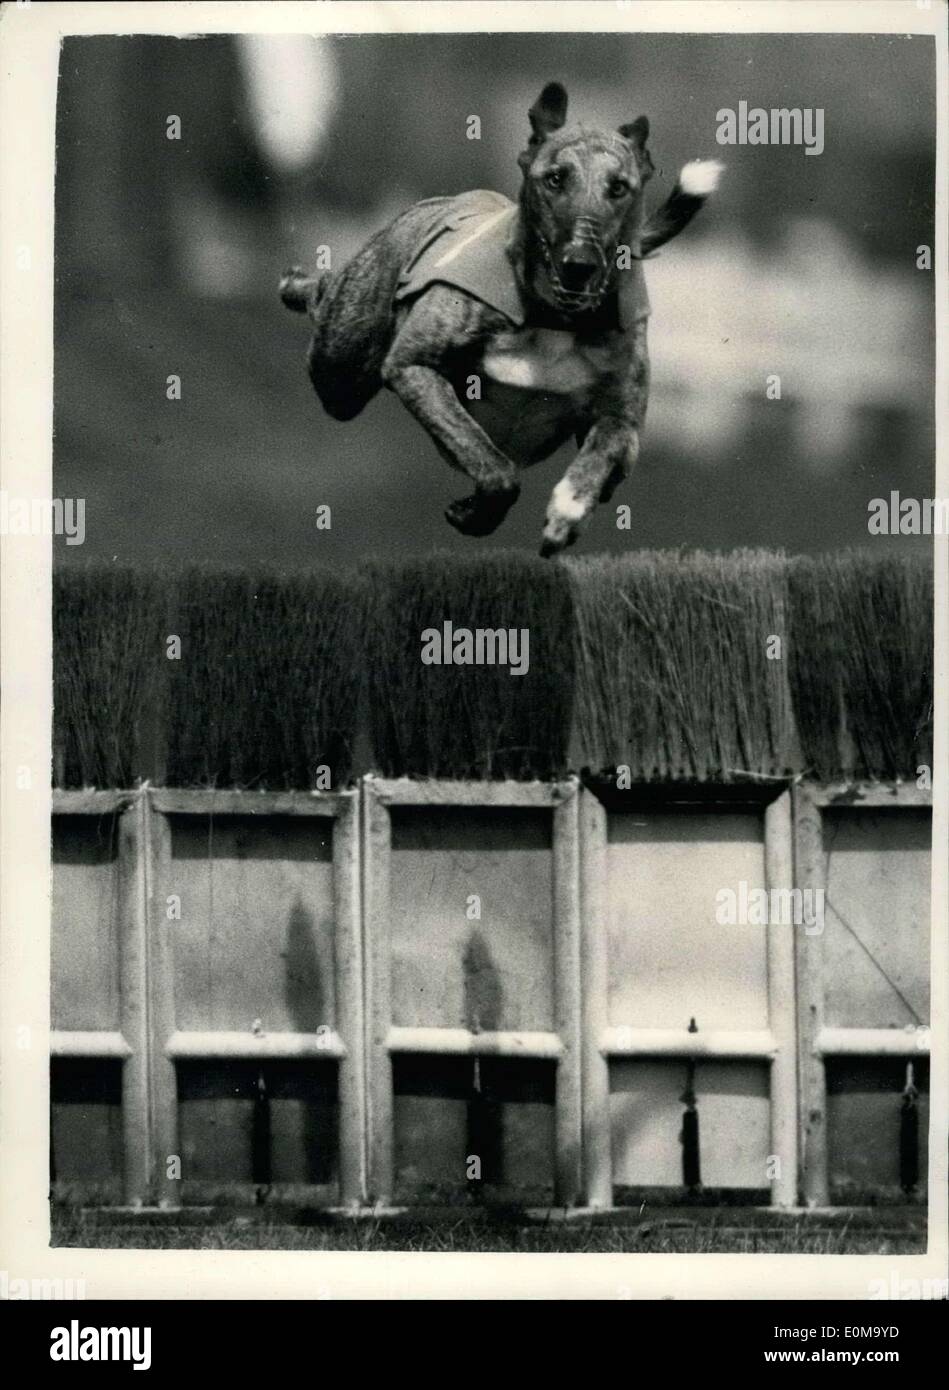 27. April 1954 - wie Hunde springen - bei 45M.p.h.greyhound Studien in Wimbledon zu gewinnen: Foto zeigt frontalen Blick '' Marazion Manaccan'' springen über die bescheidenen - bei 45 mph während der Greyhound-Trials in Wimbledon. Fotografieren mit einer langen Tom "Kamera mit einem 50-Zoll-Objektiv ausgestattet. Stockfoto